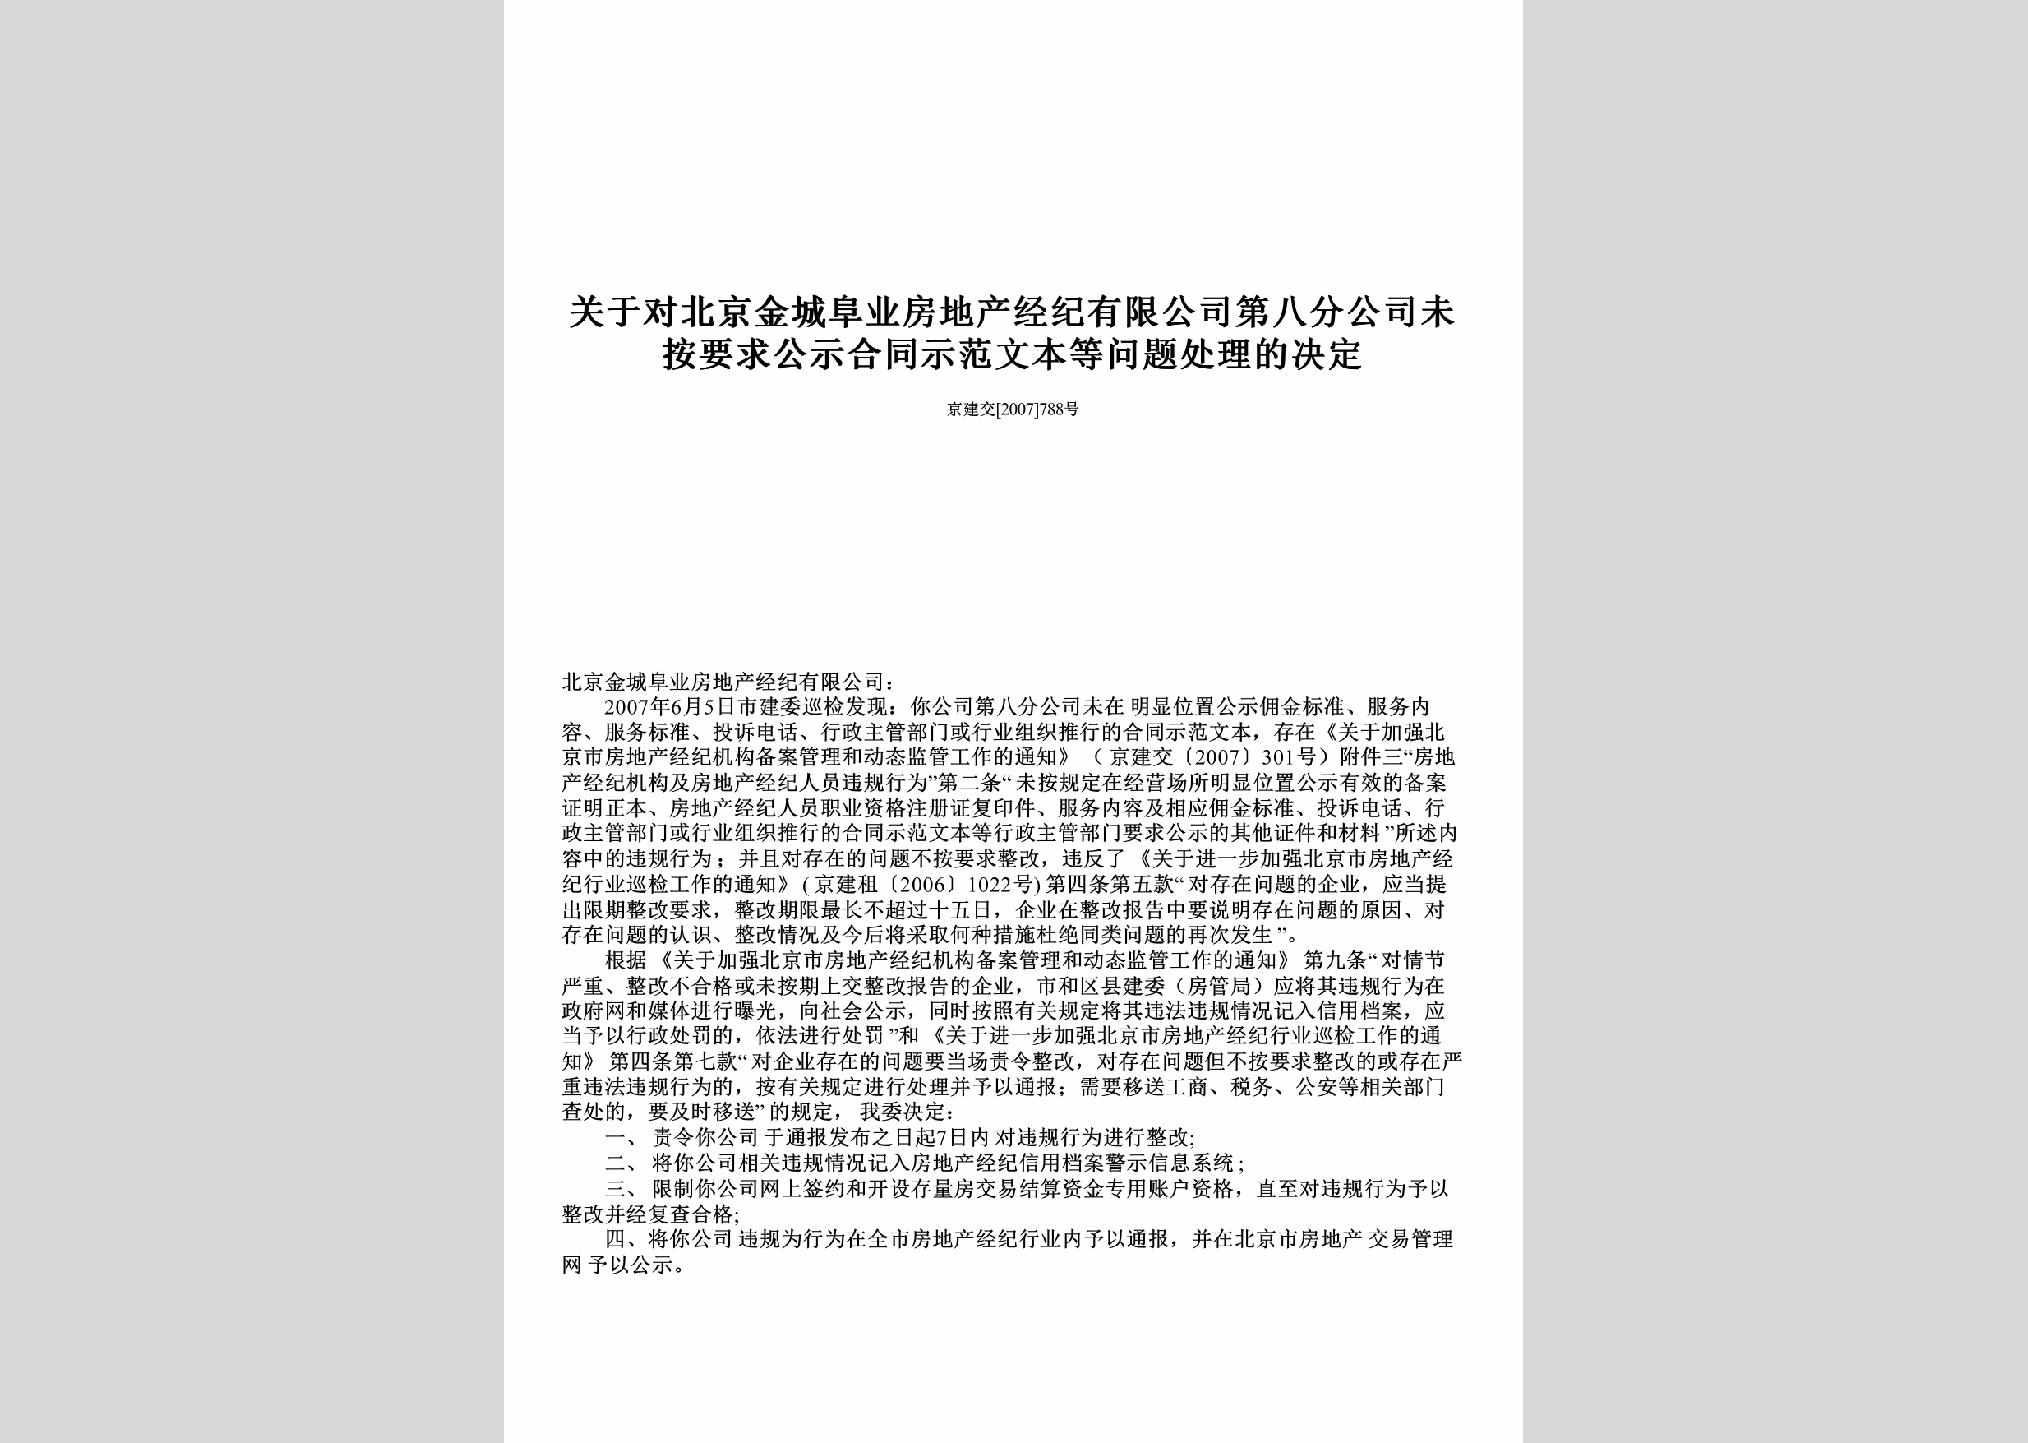 京建交[2007]788号：关于对北京金城阜业房地产经纪有限公司第八分公司未按要求公示合同示范文本等问题处理的决定